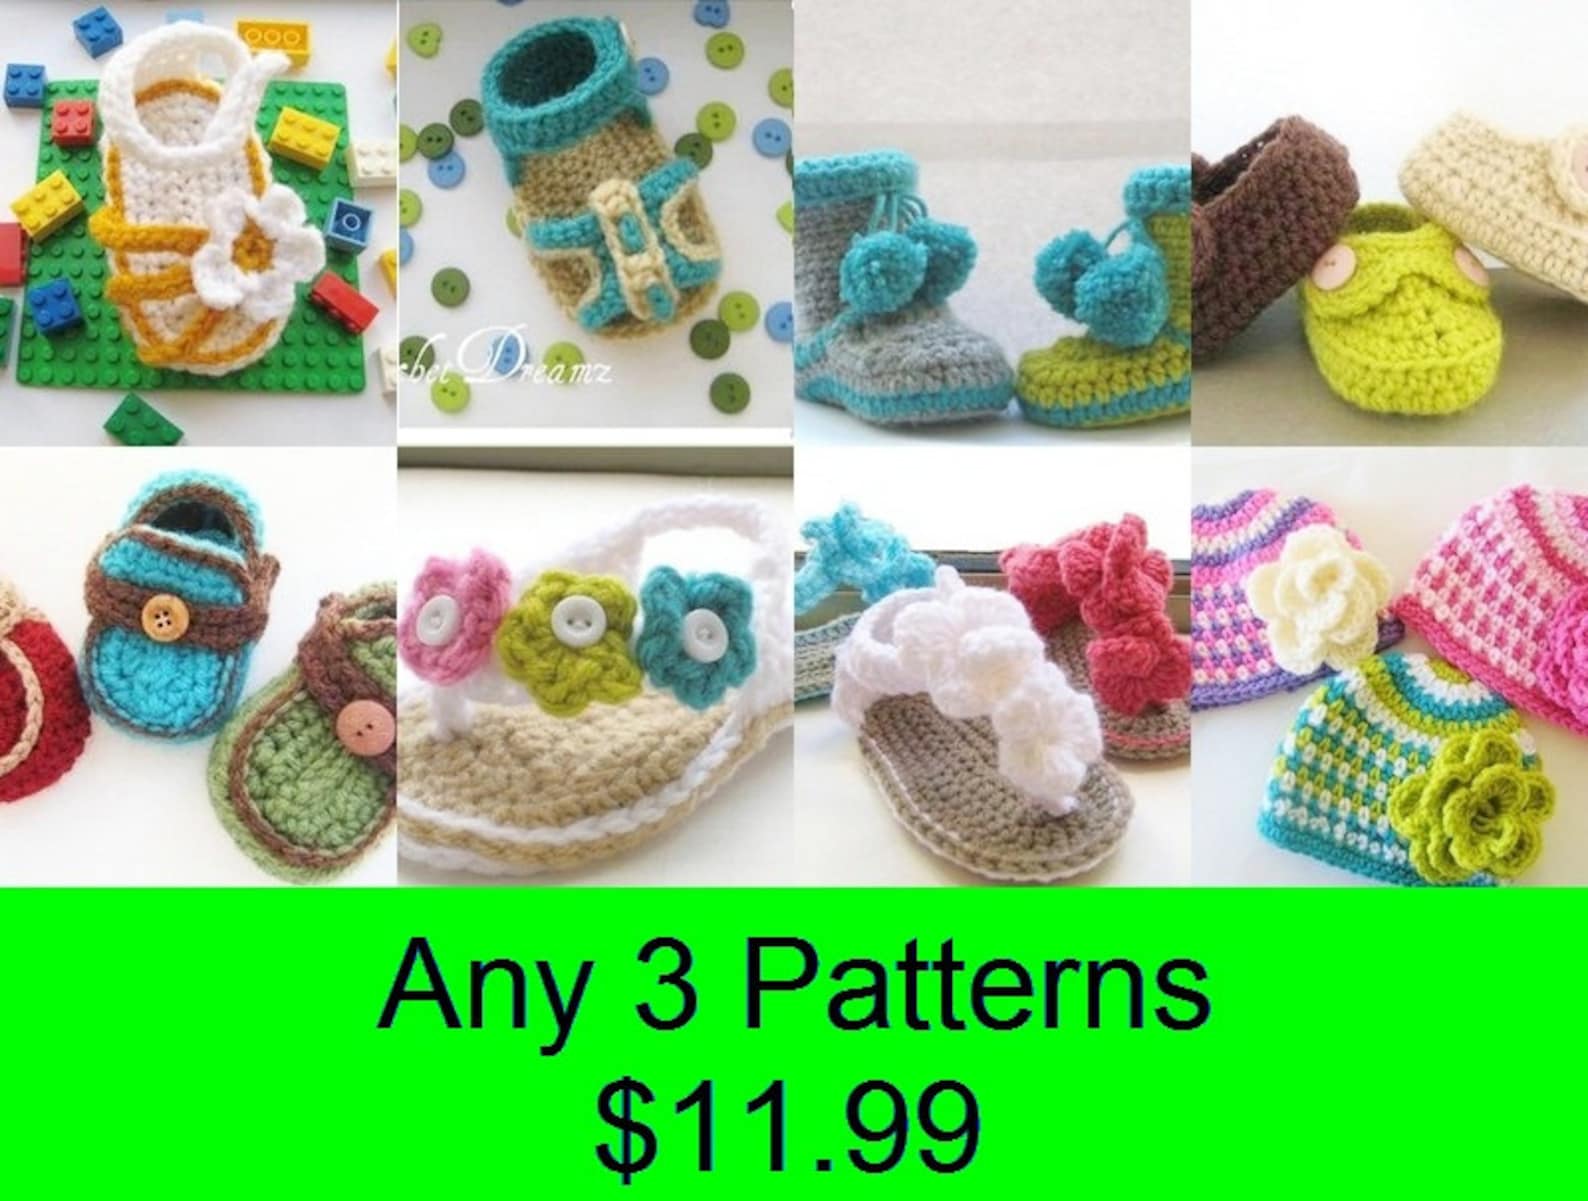 crochet booties pattern, crochet pattern booties for girls (pdf pattern) 4 sizes, ballet flats